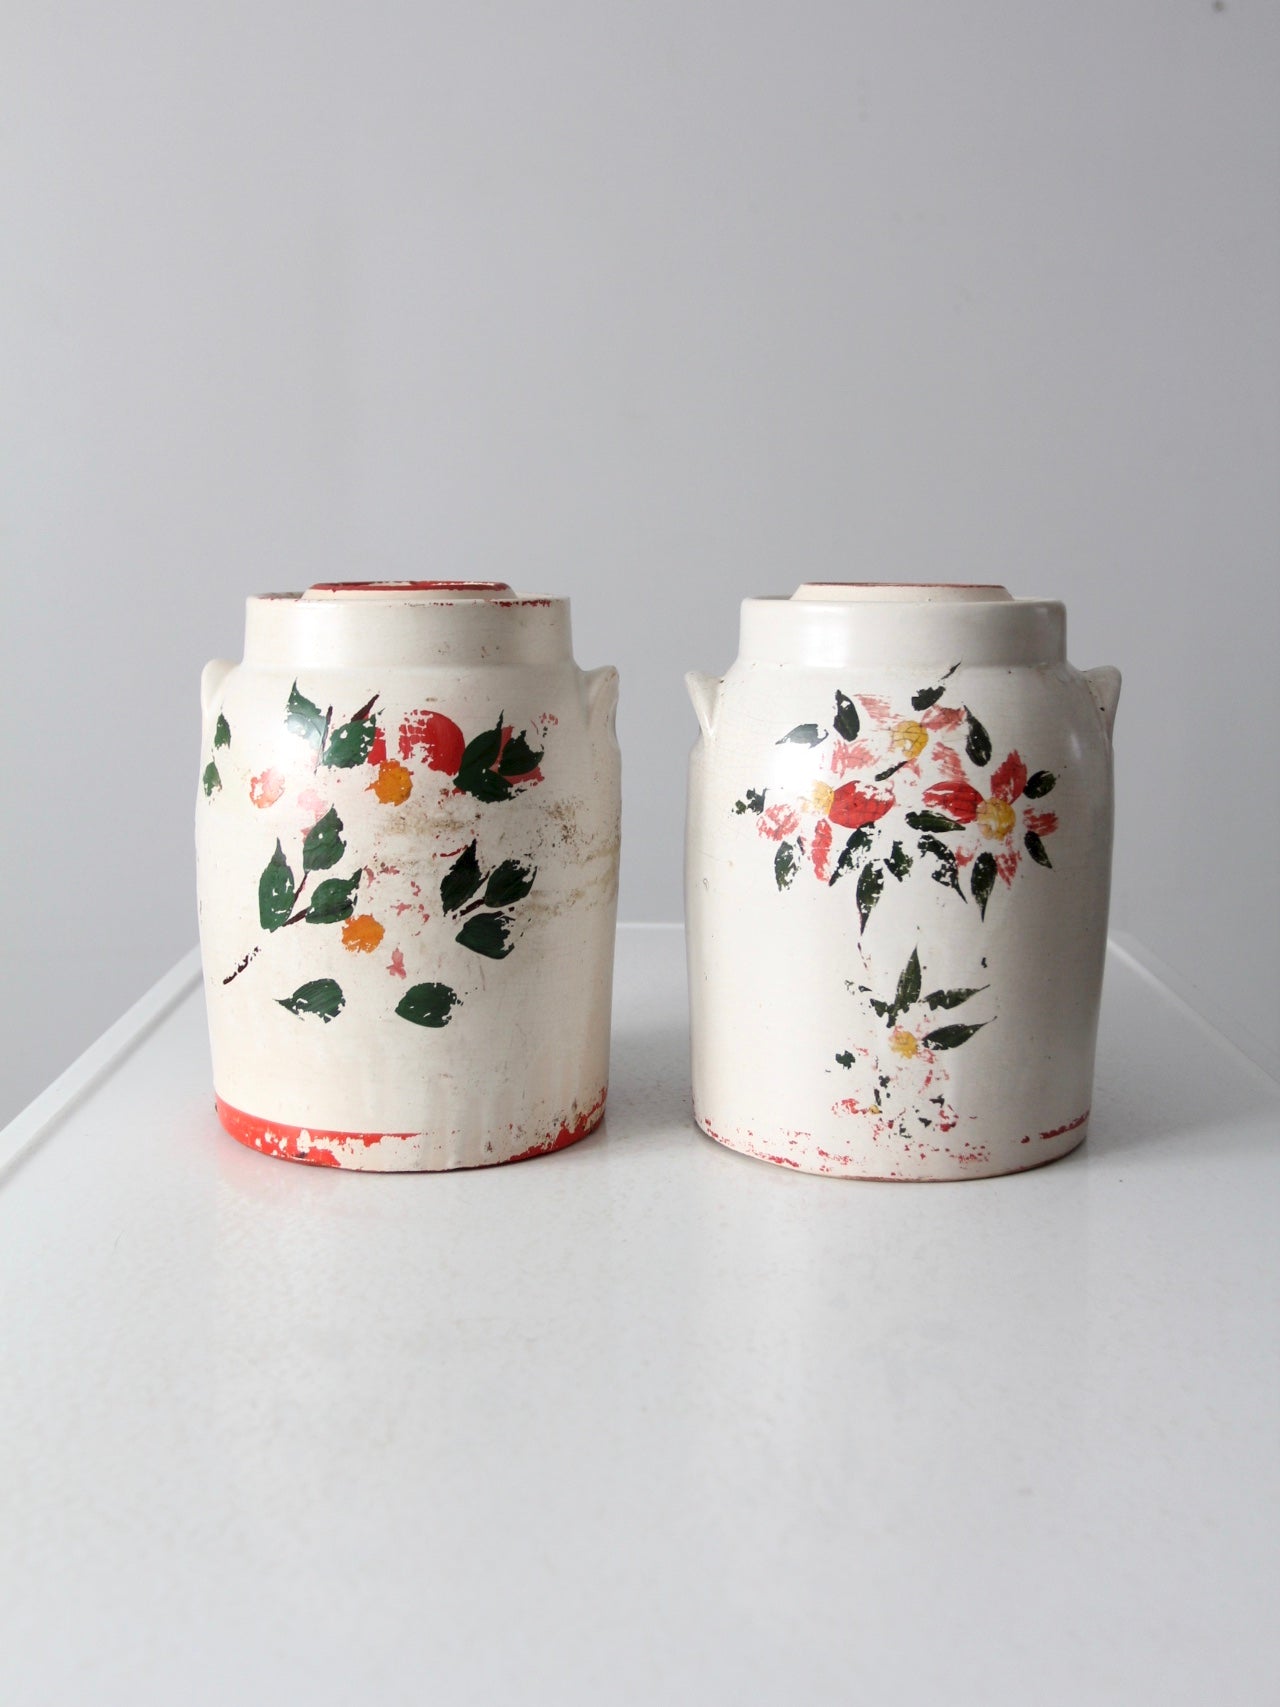 vintage stoneware cookie jars pair